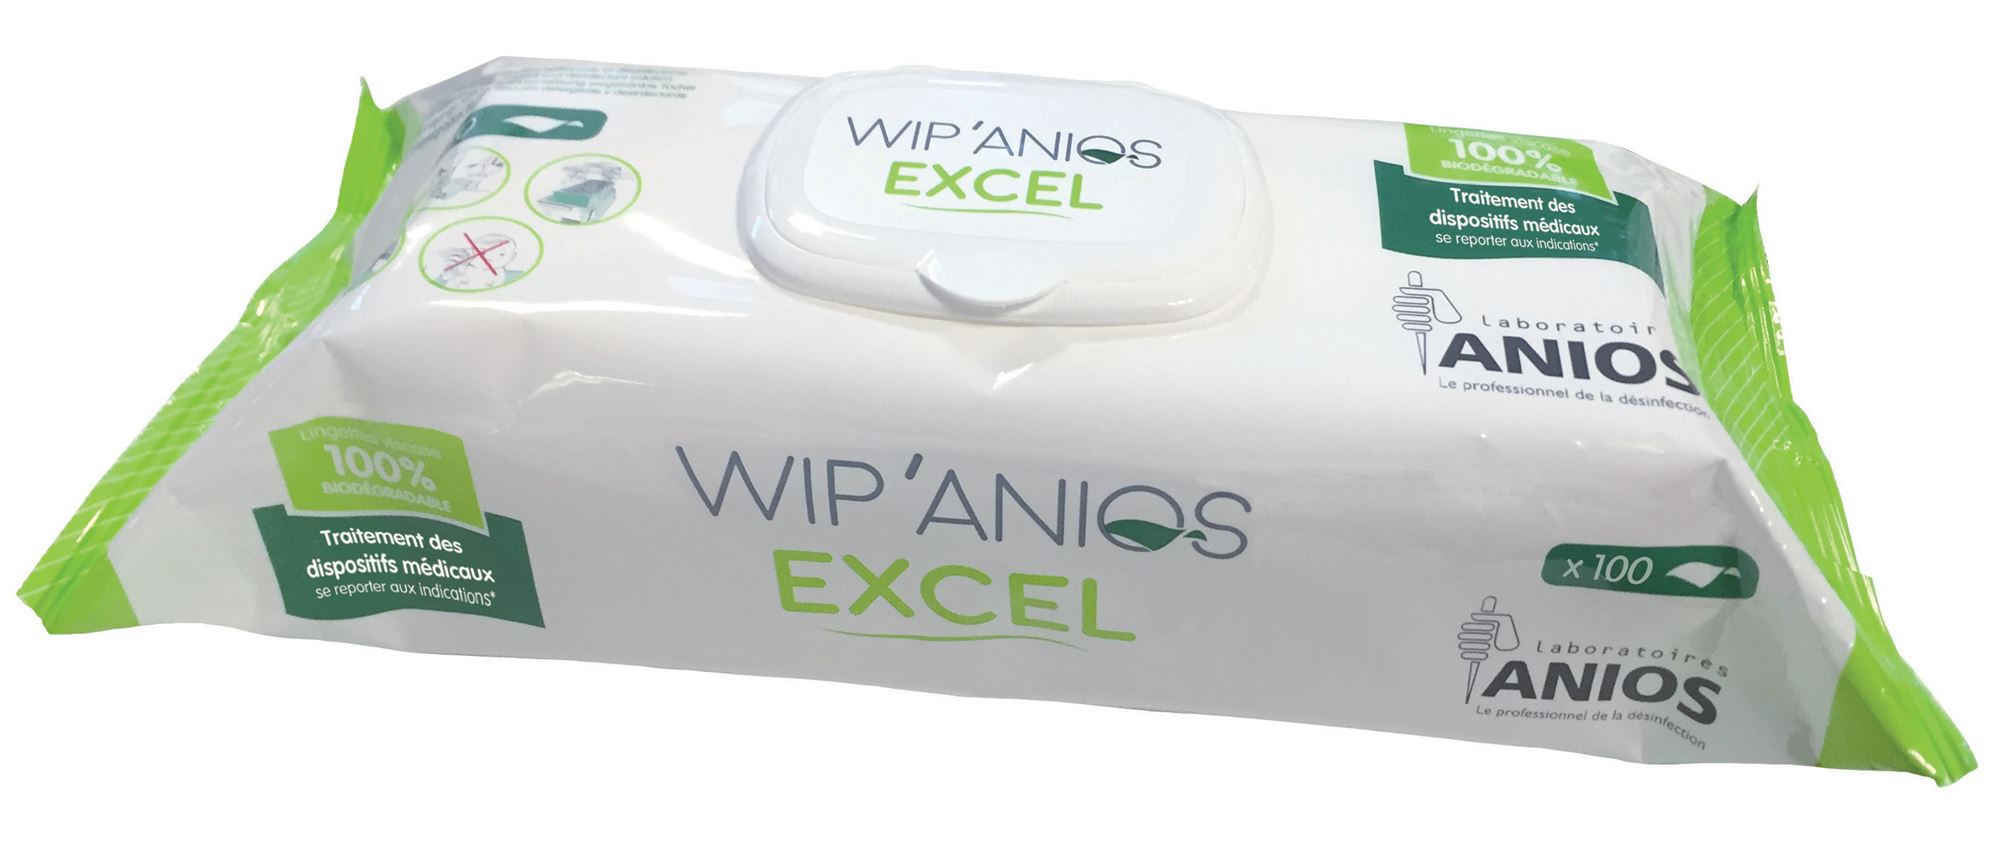 Wip Anios lingette desinfectante x100 - Voussert